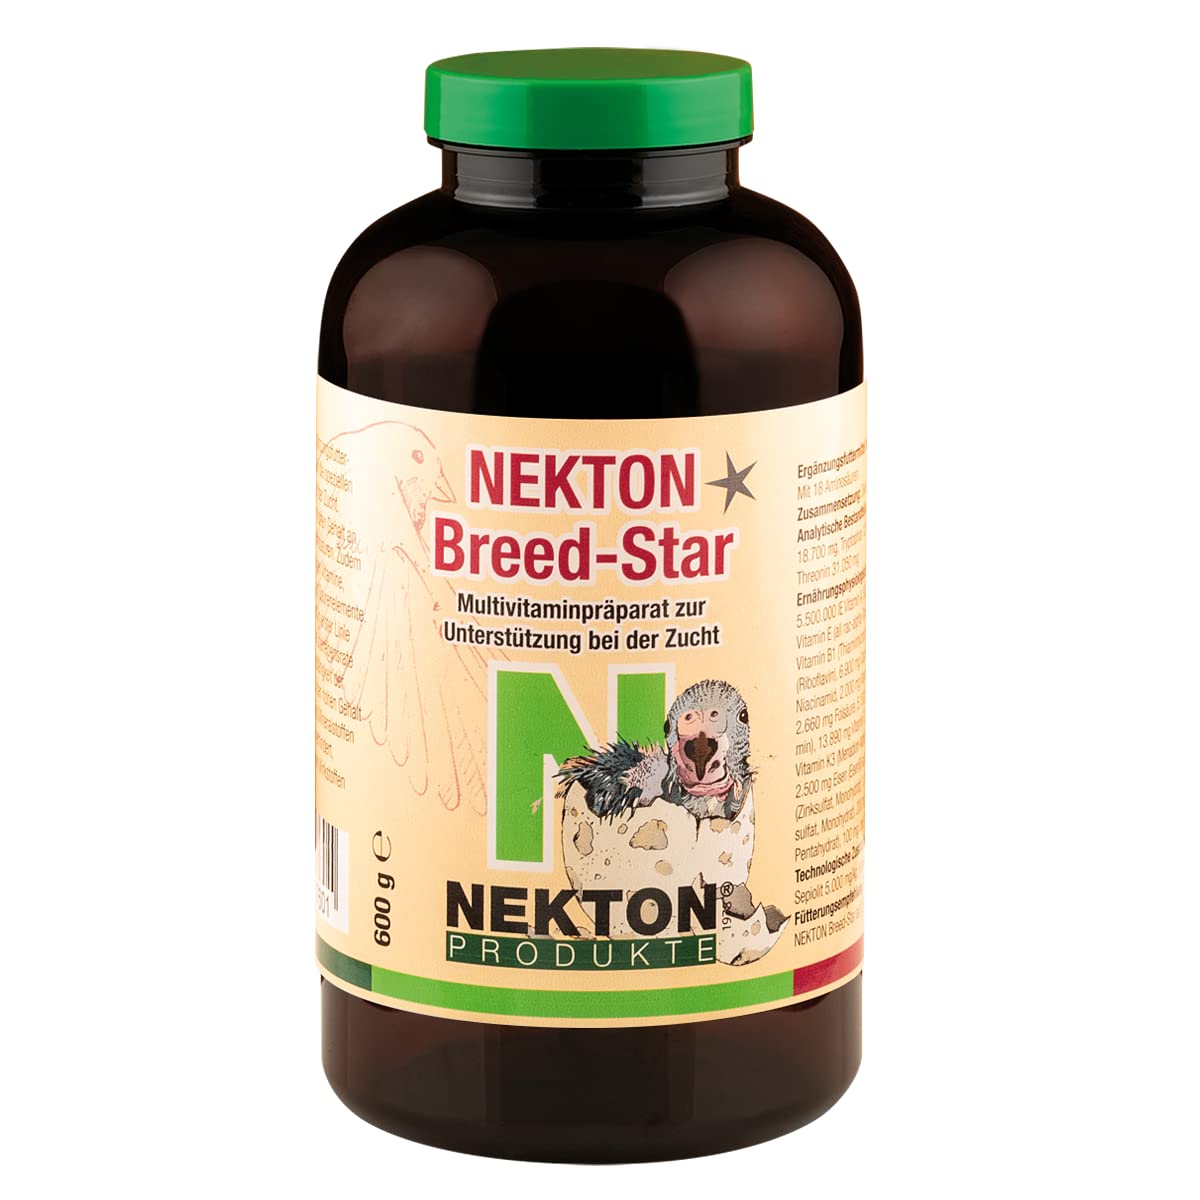 NEKTON-Breed-Star | Multivitaminpräparat zur Unterstützung bei der Zucht | Hoher Anteil an Aminosäuren | Made in Germany (600g)